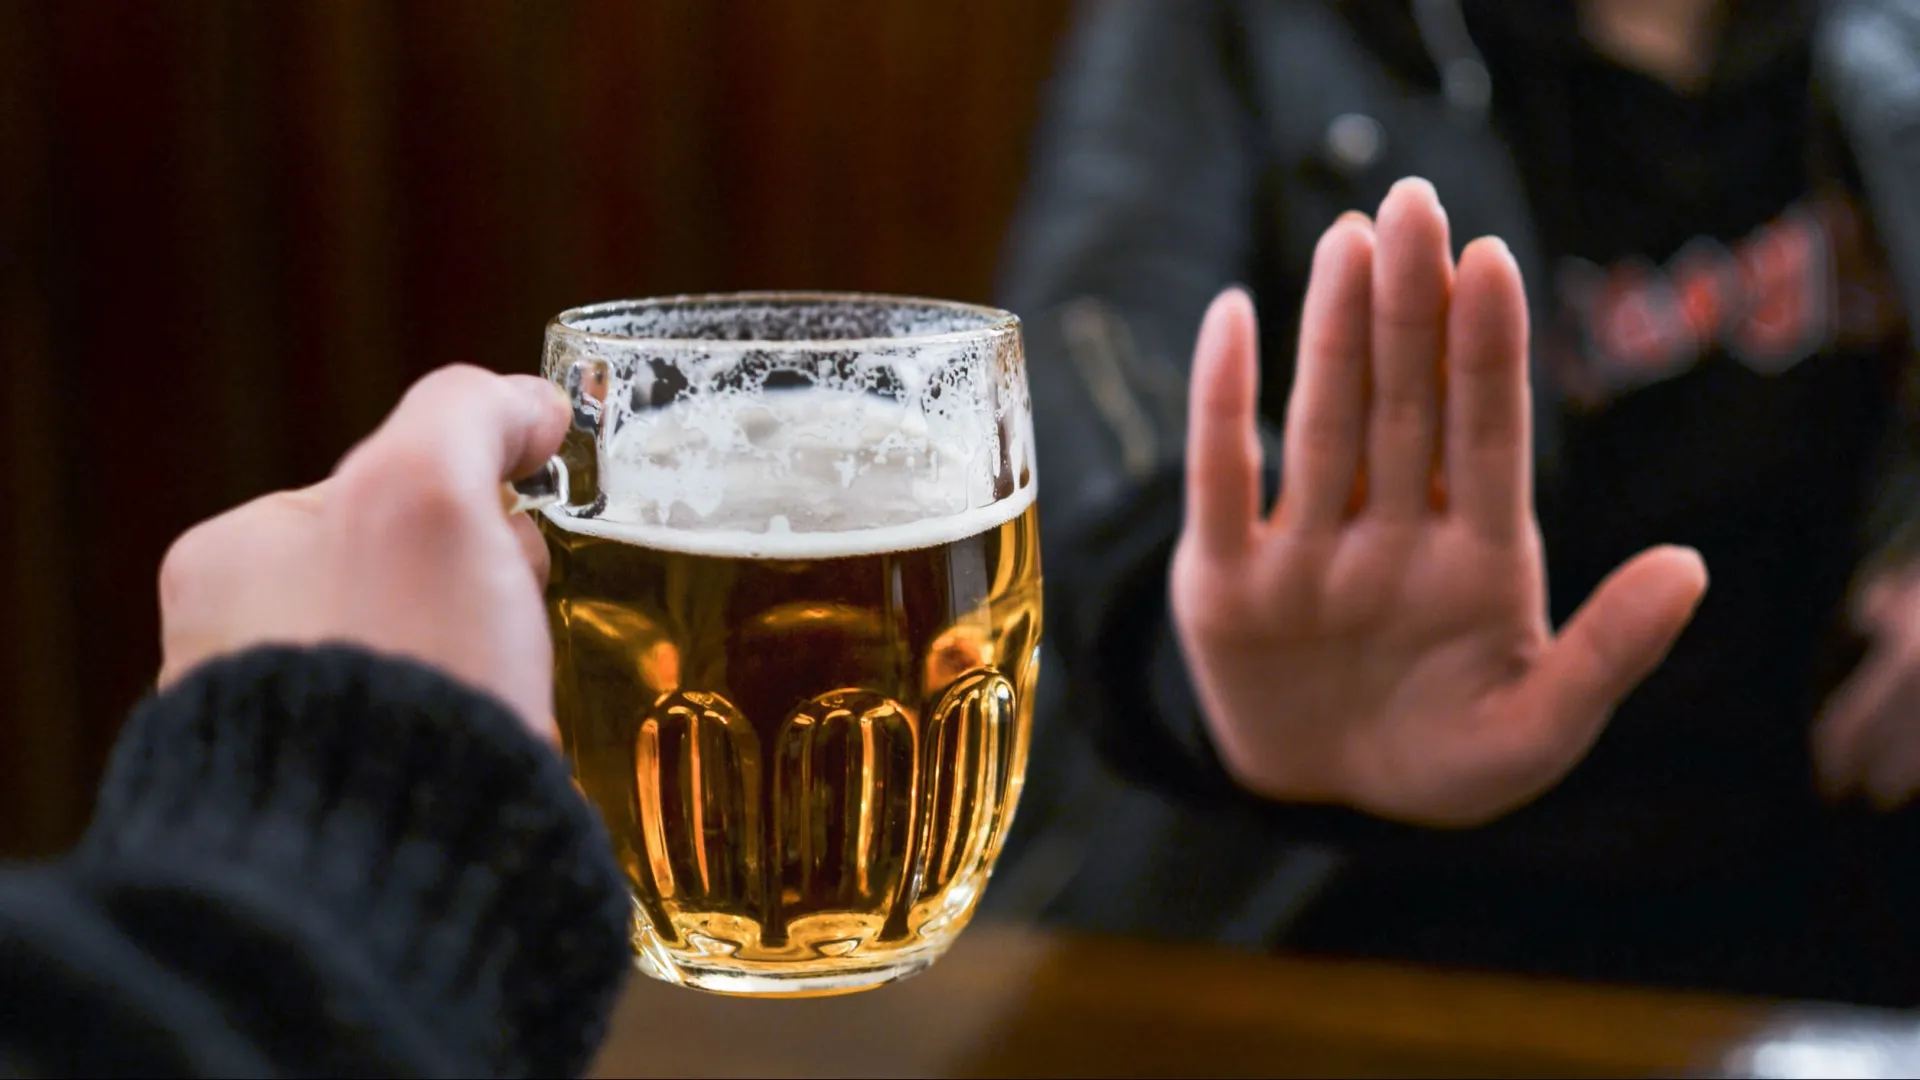 Осознанный отказ от пива — первый шаг к оздоровлению. Фото: Mateone / Shutterstock / Fotodom